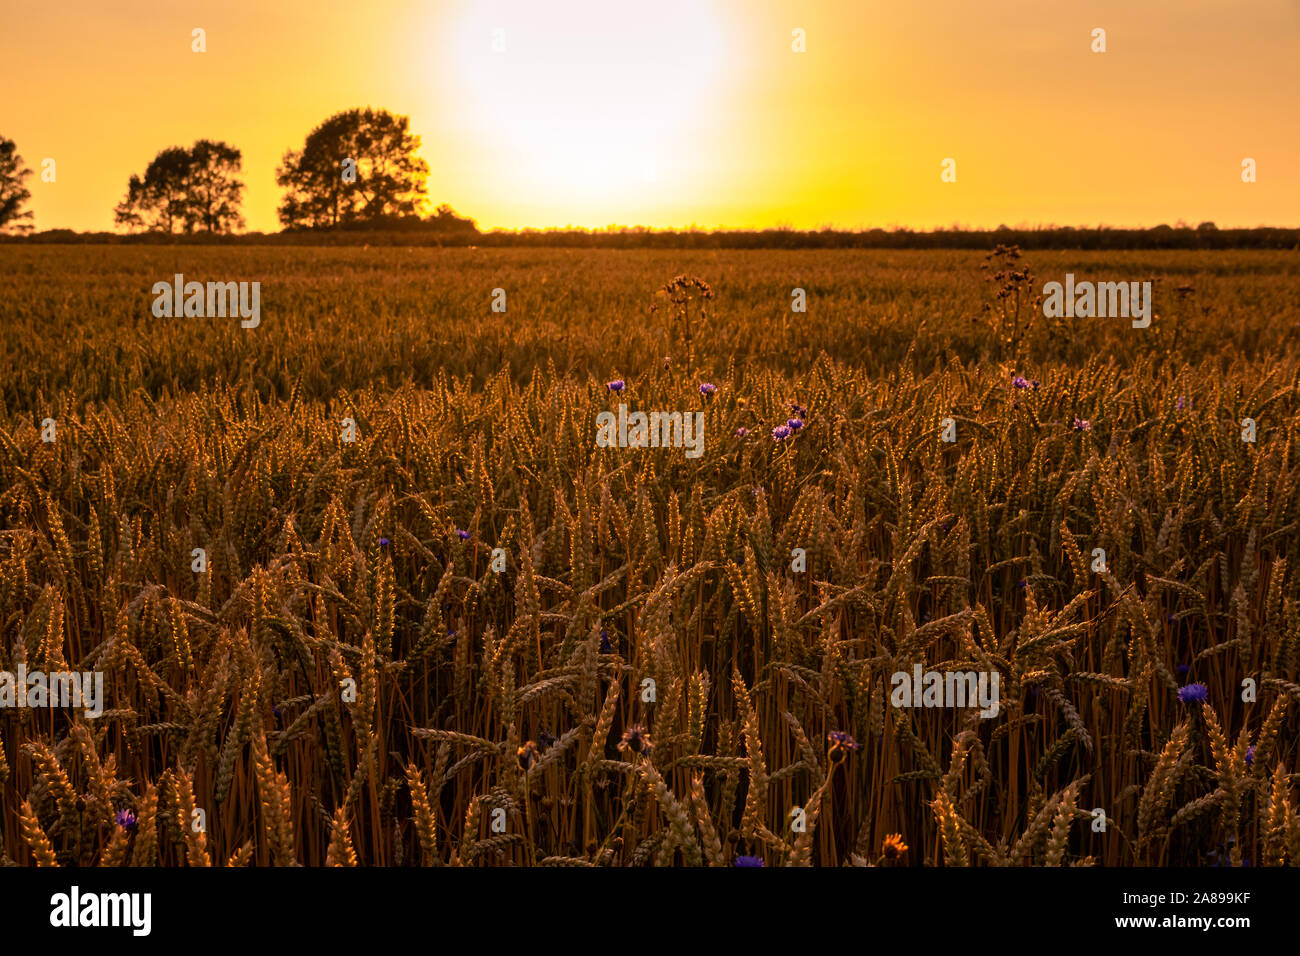 Weizenfeld mit Kornblumen im Sonnenuntergang Stock Photo